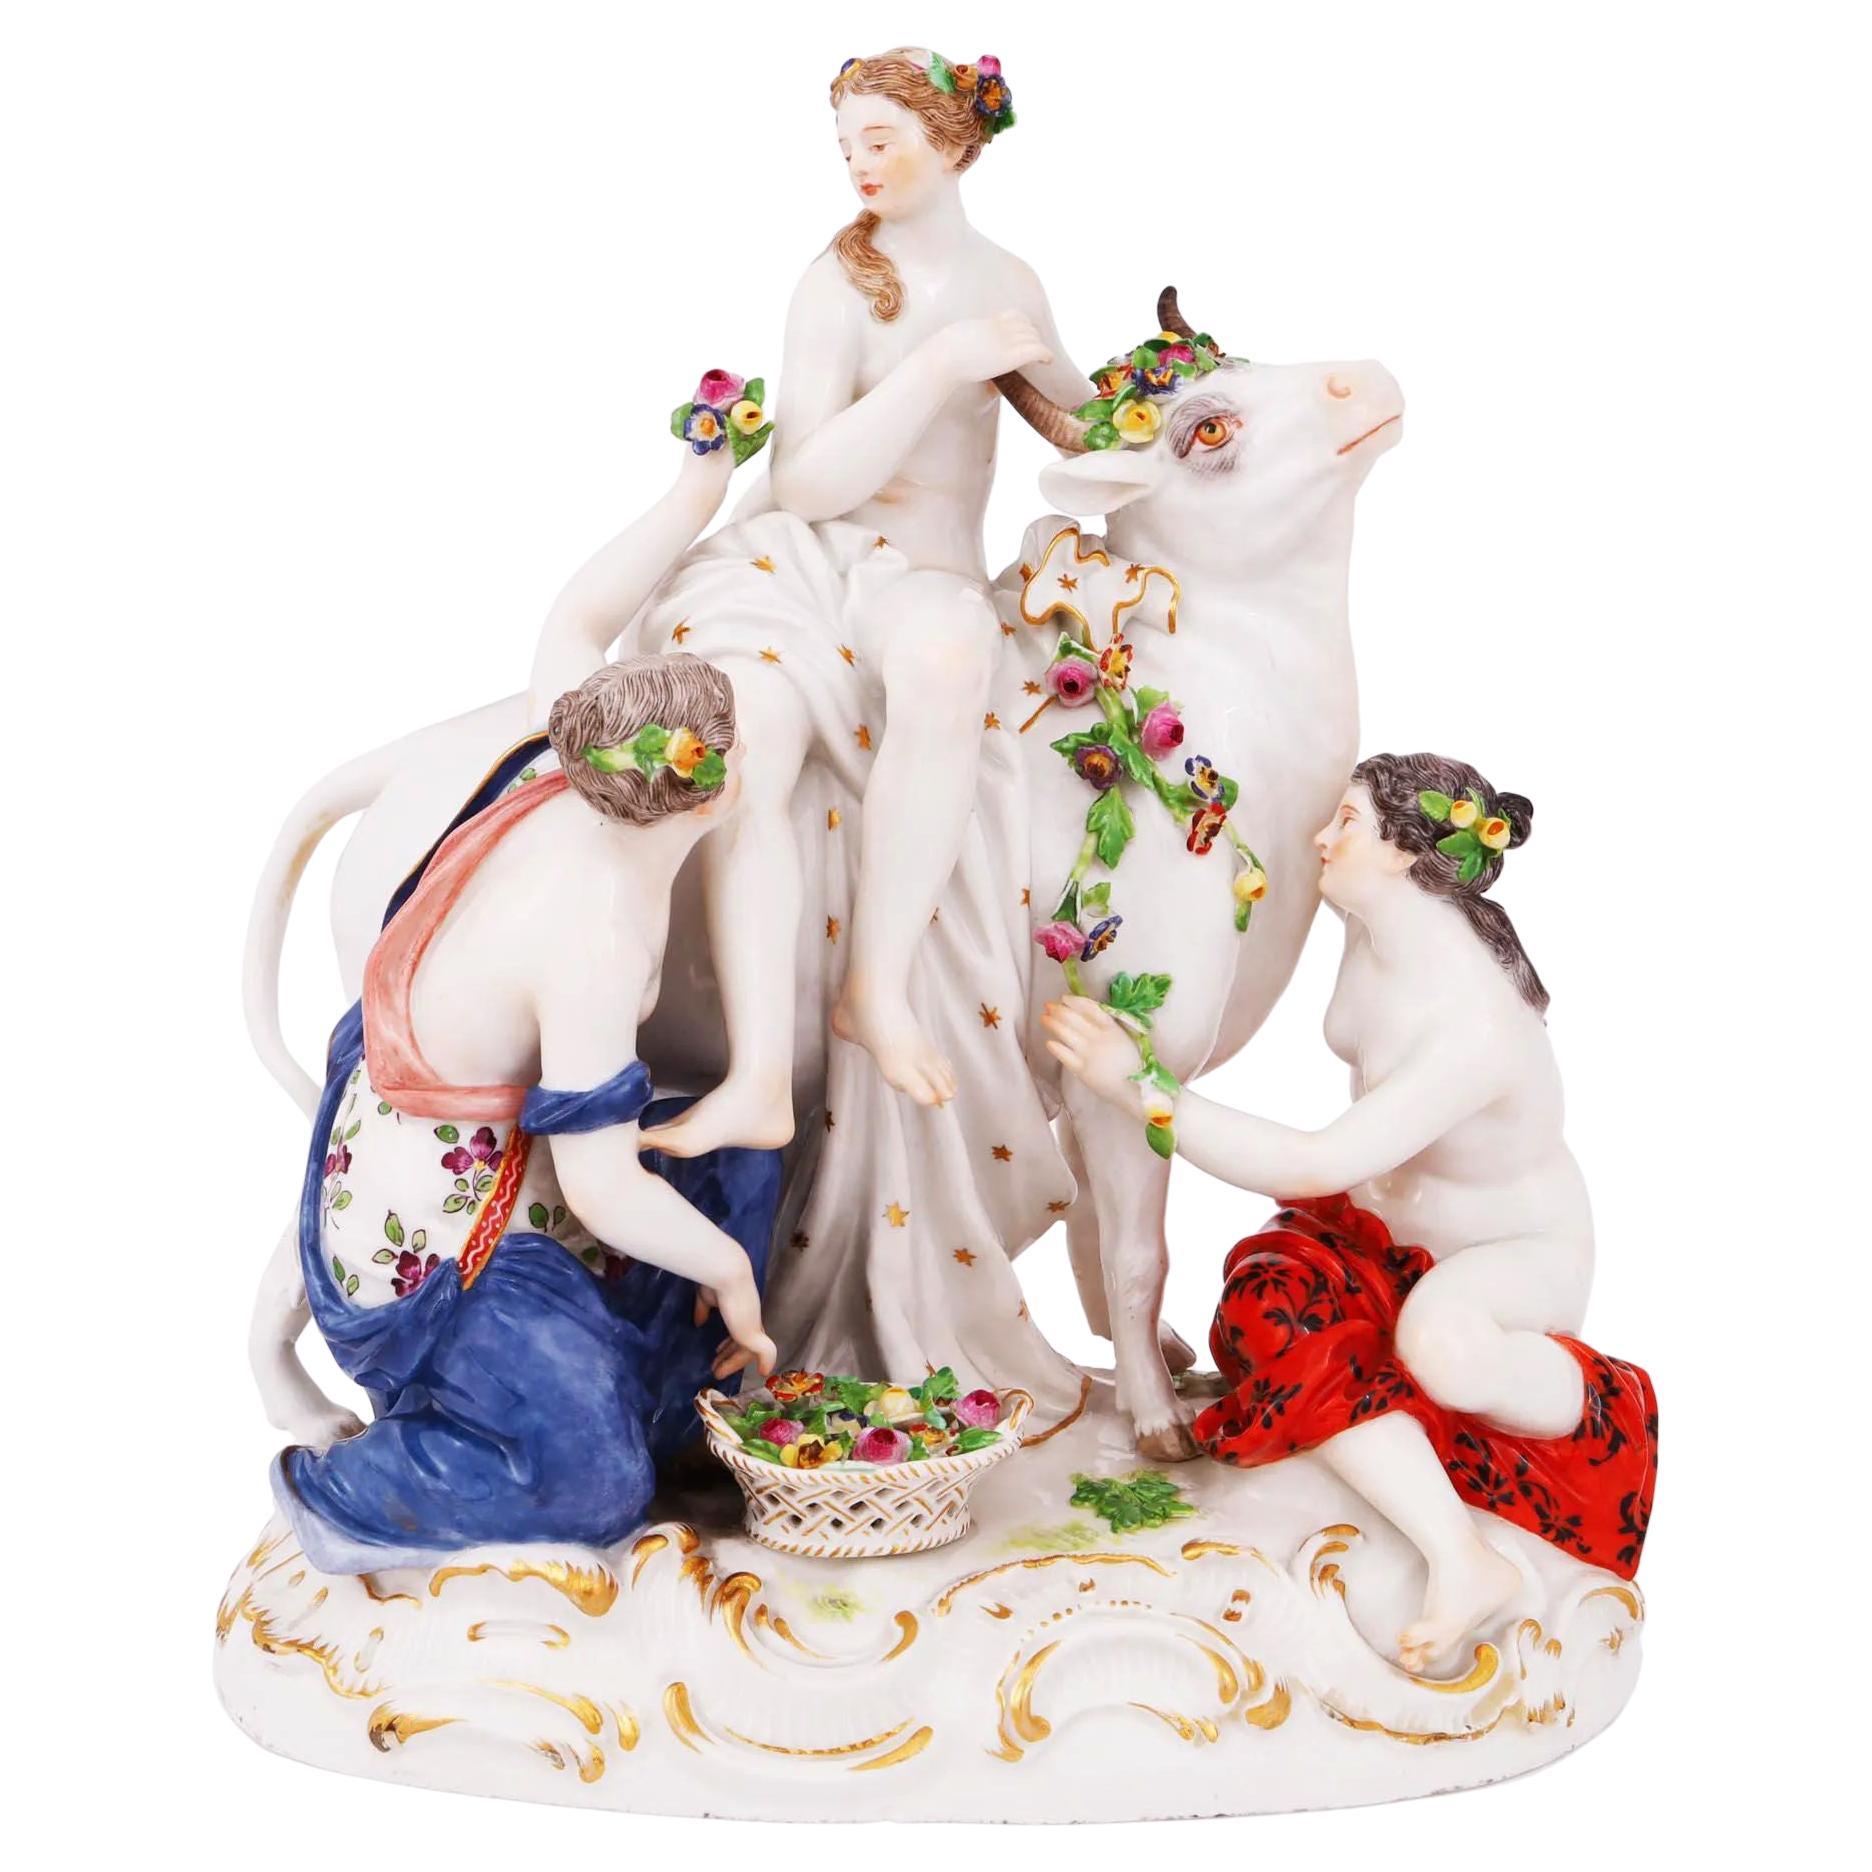 Meissener Porzellanfigur mit der Darstellung der Rape of Europa